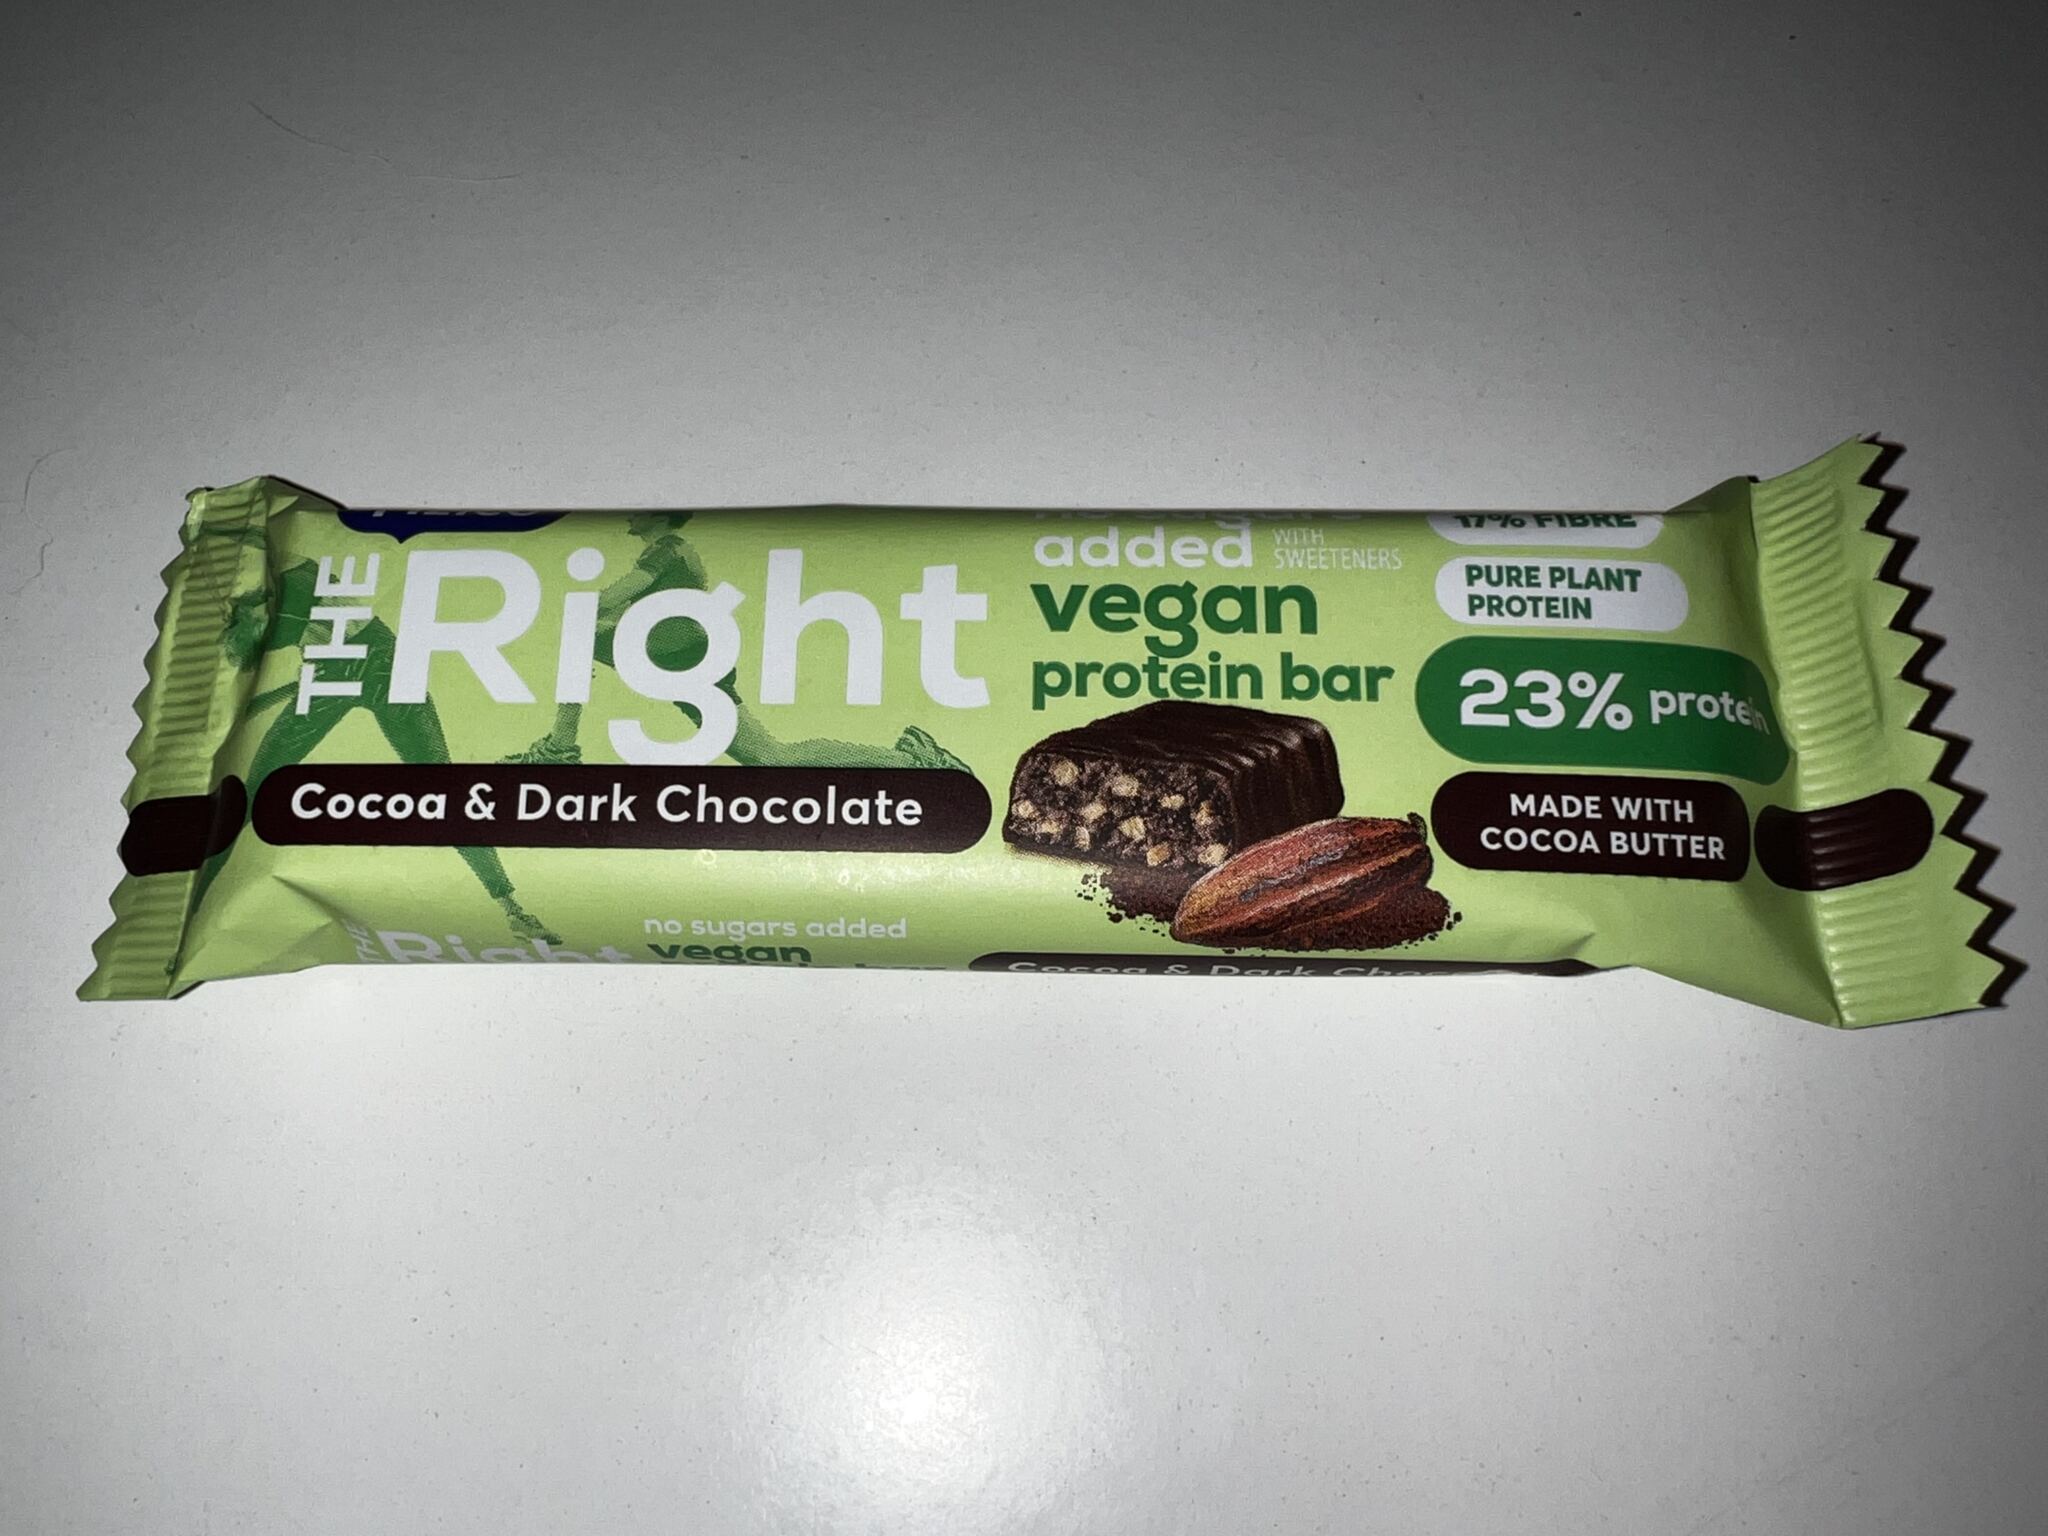 Calcul calorii mancare - Jurnal de slabit - Dieta de slabire - Baton proteic cu cacao si ciocolata neagra 23% proteina - 01.03.23